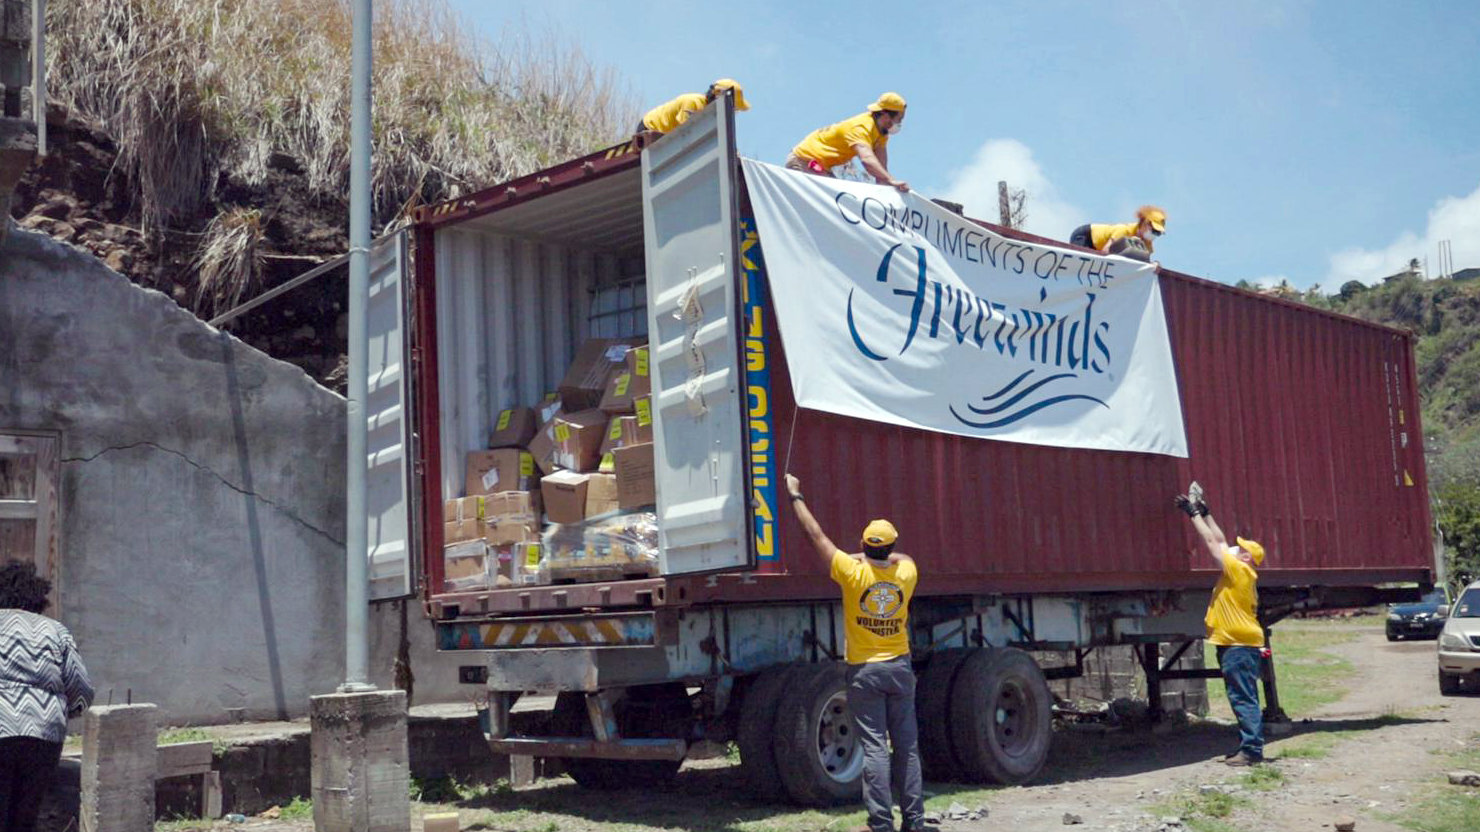 Et team av VM-er losser en container med livsviktige forsyninger som
Freewinds sendte til øya med støtte fra IAS.